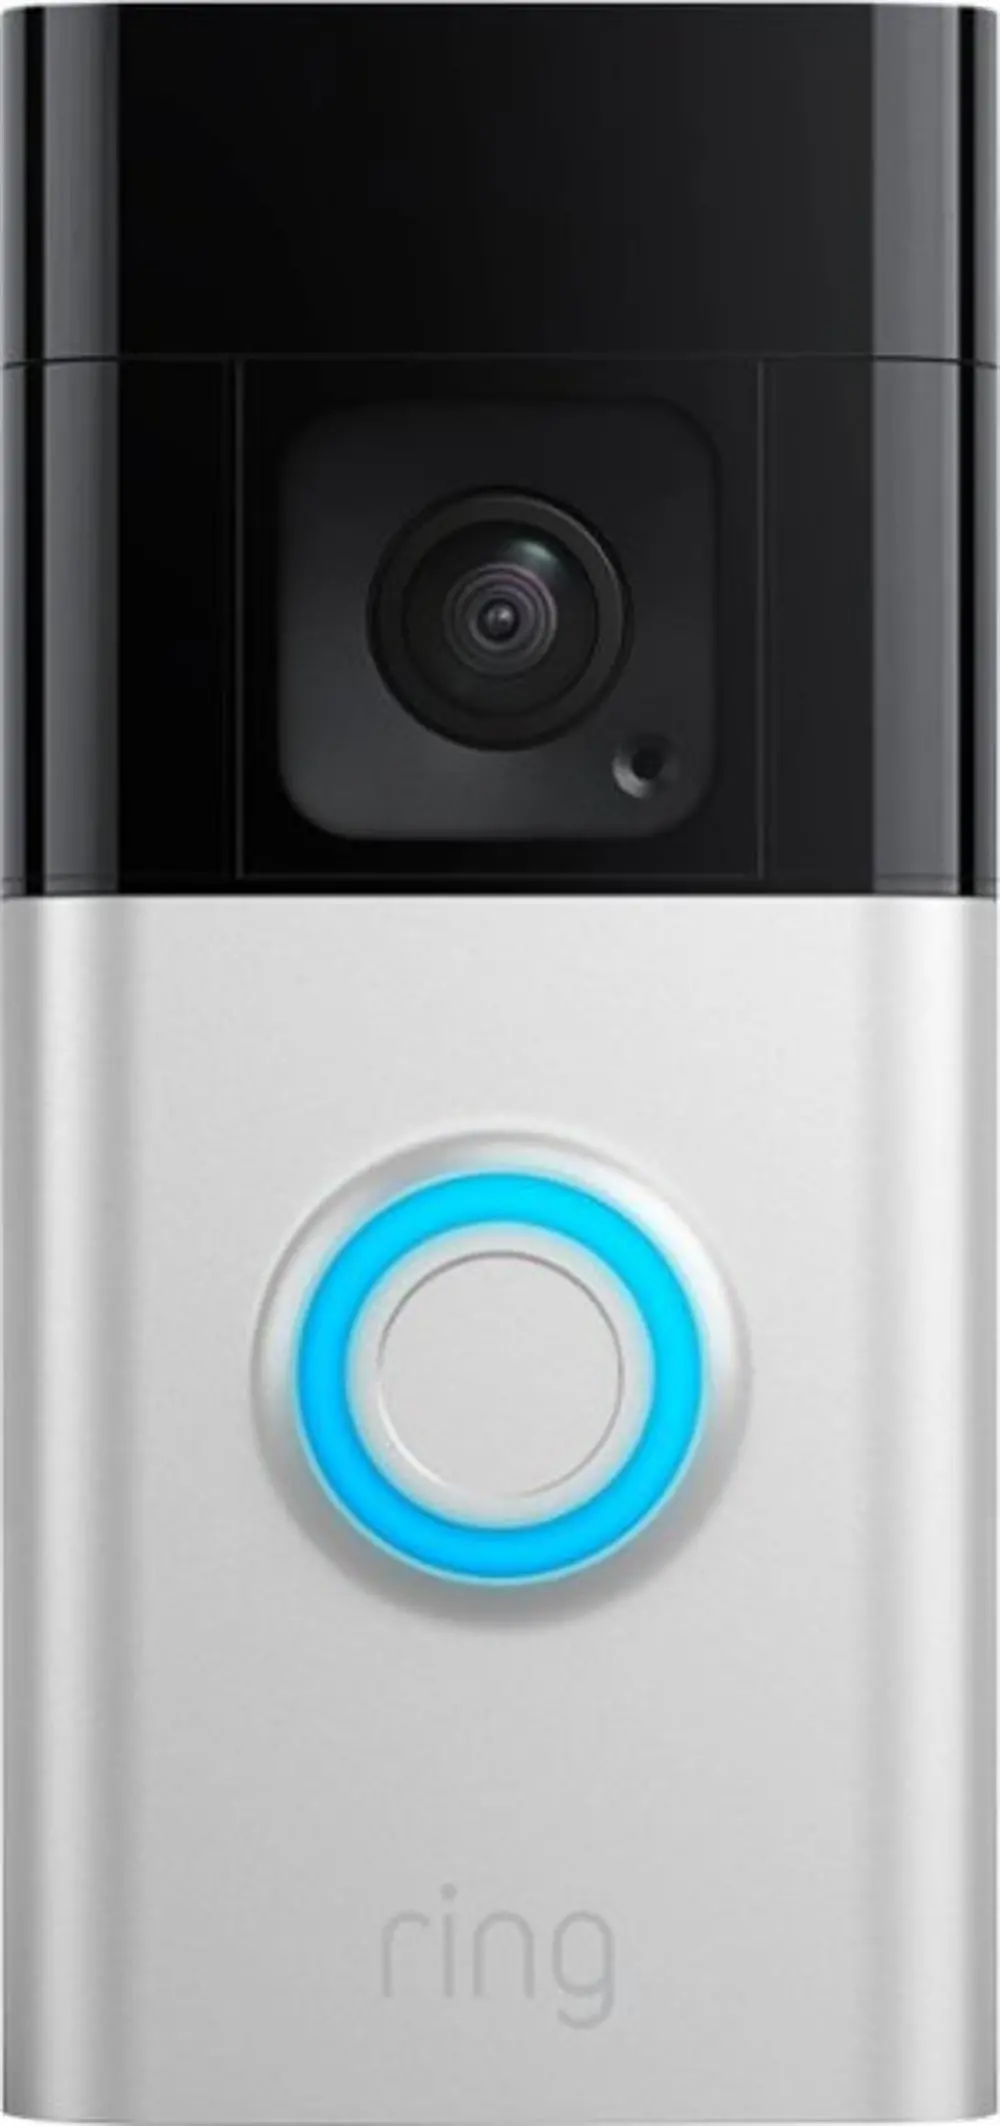 B09WZBPX7K-DOORBELL+ Ring - Battery Doorbell Plus Smart Wifi Video Doorbell – Battery Operated - Satin Nickel-1